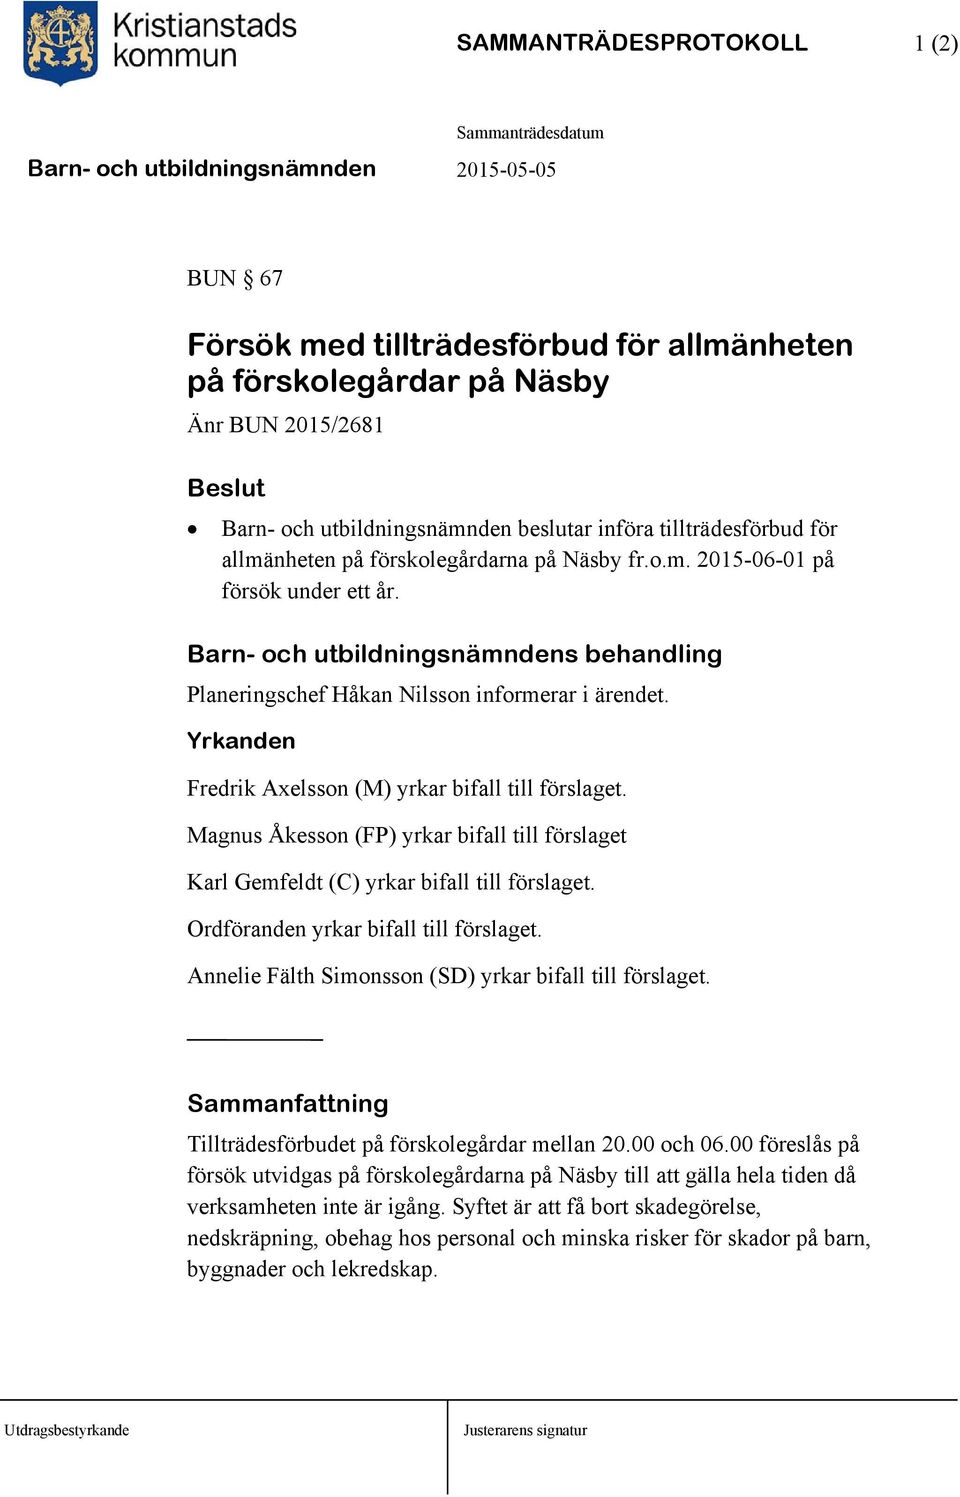 Yrkanden Fredrik Axelsson (M) yrkar bifall till förslaget. Magnus Åkesson (FP) yrkar bifall till förslaget Karl Gemfeldt (C) yrkar bifall till förslaget. Ordföranden yrkar bifall till förslaget.